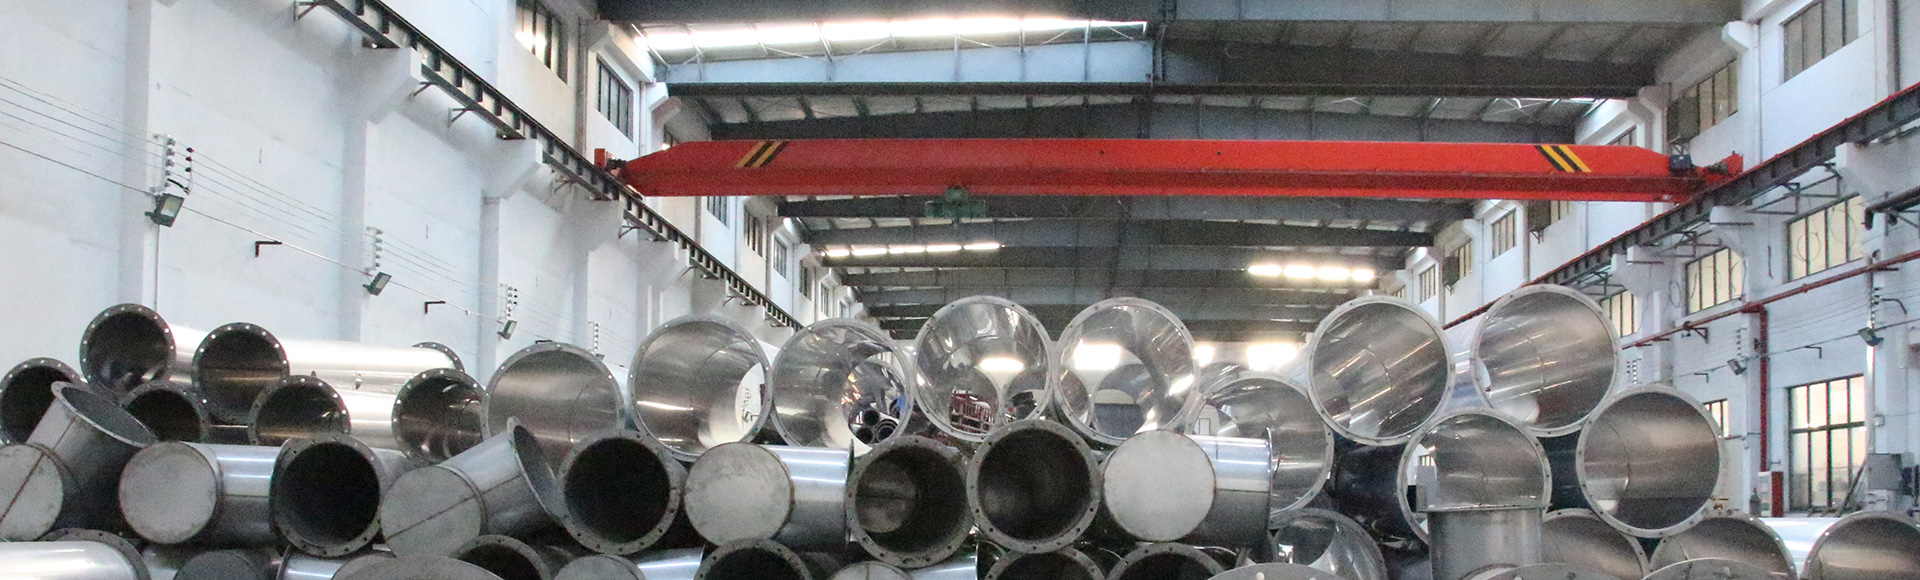 不锈钢风管,不锈钢焊接风管厂家-无锡拉菲9暖通设备有限公司